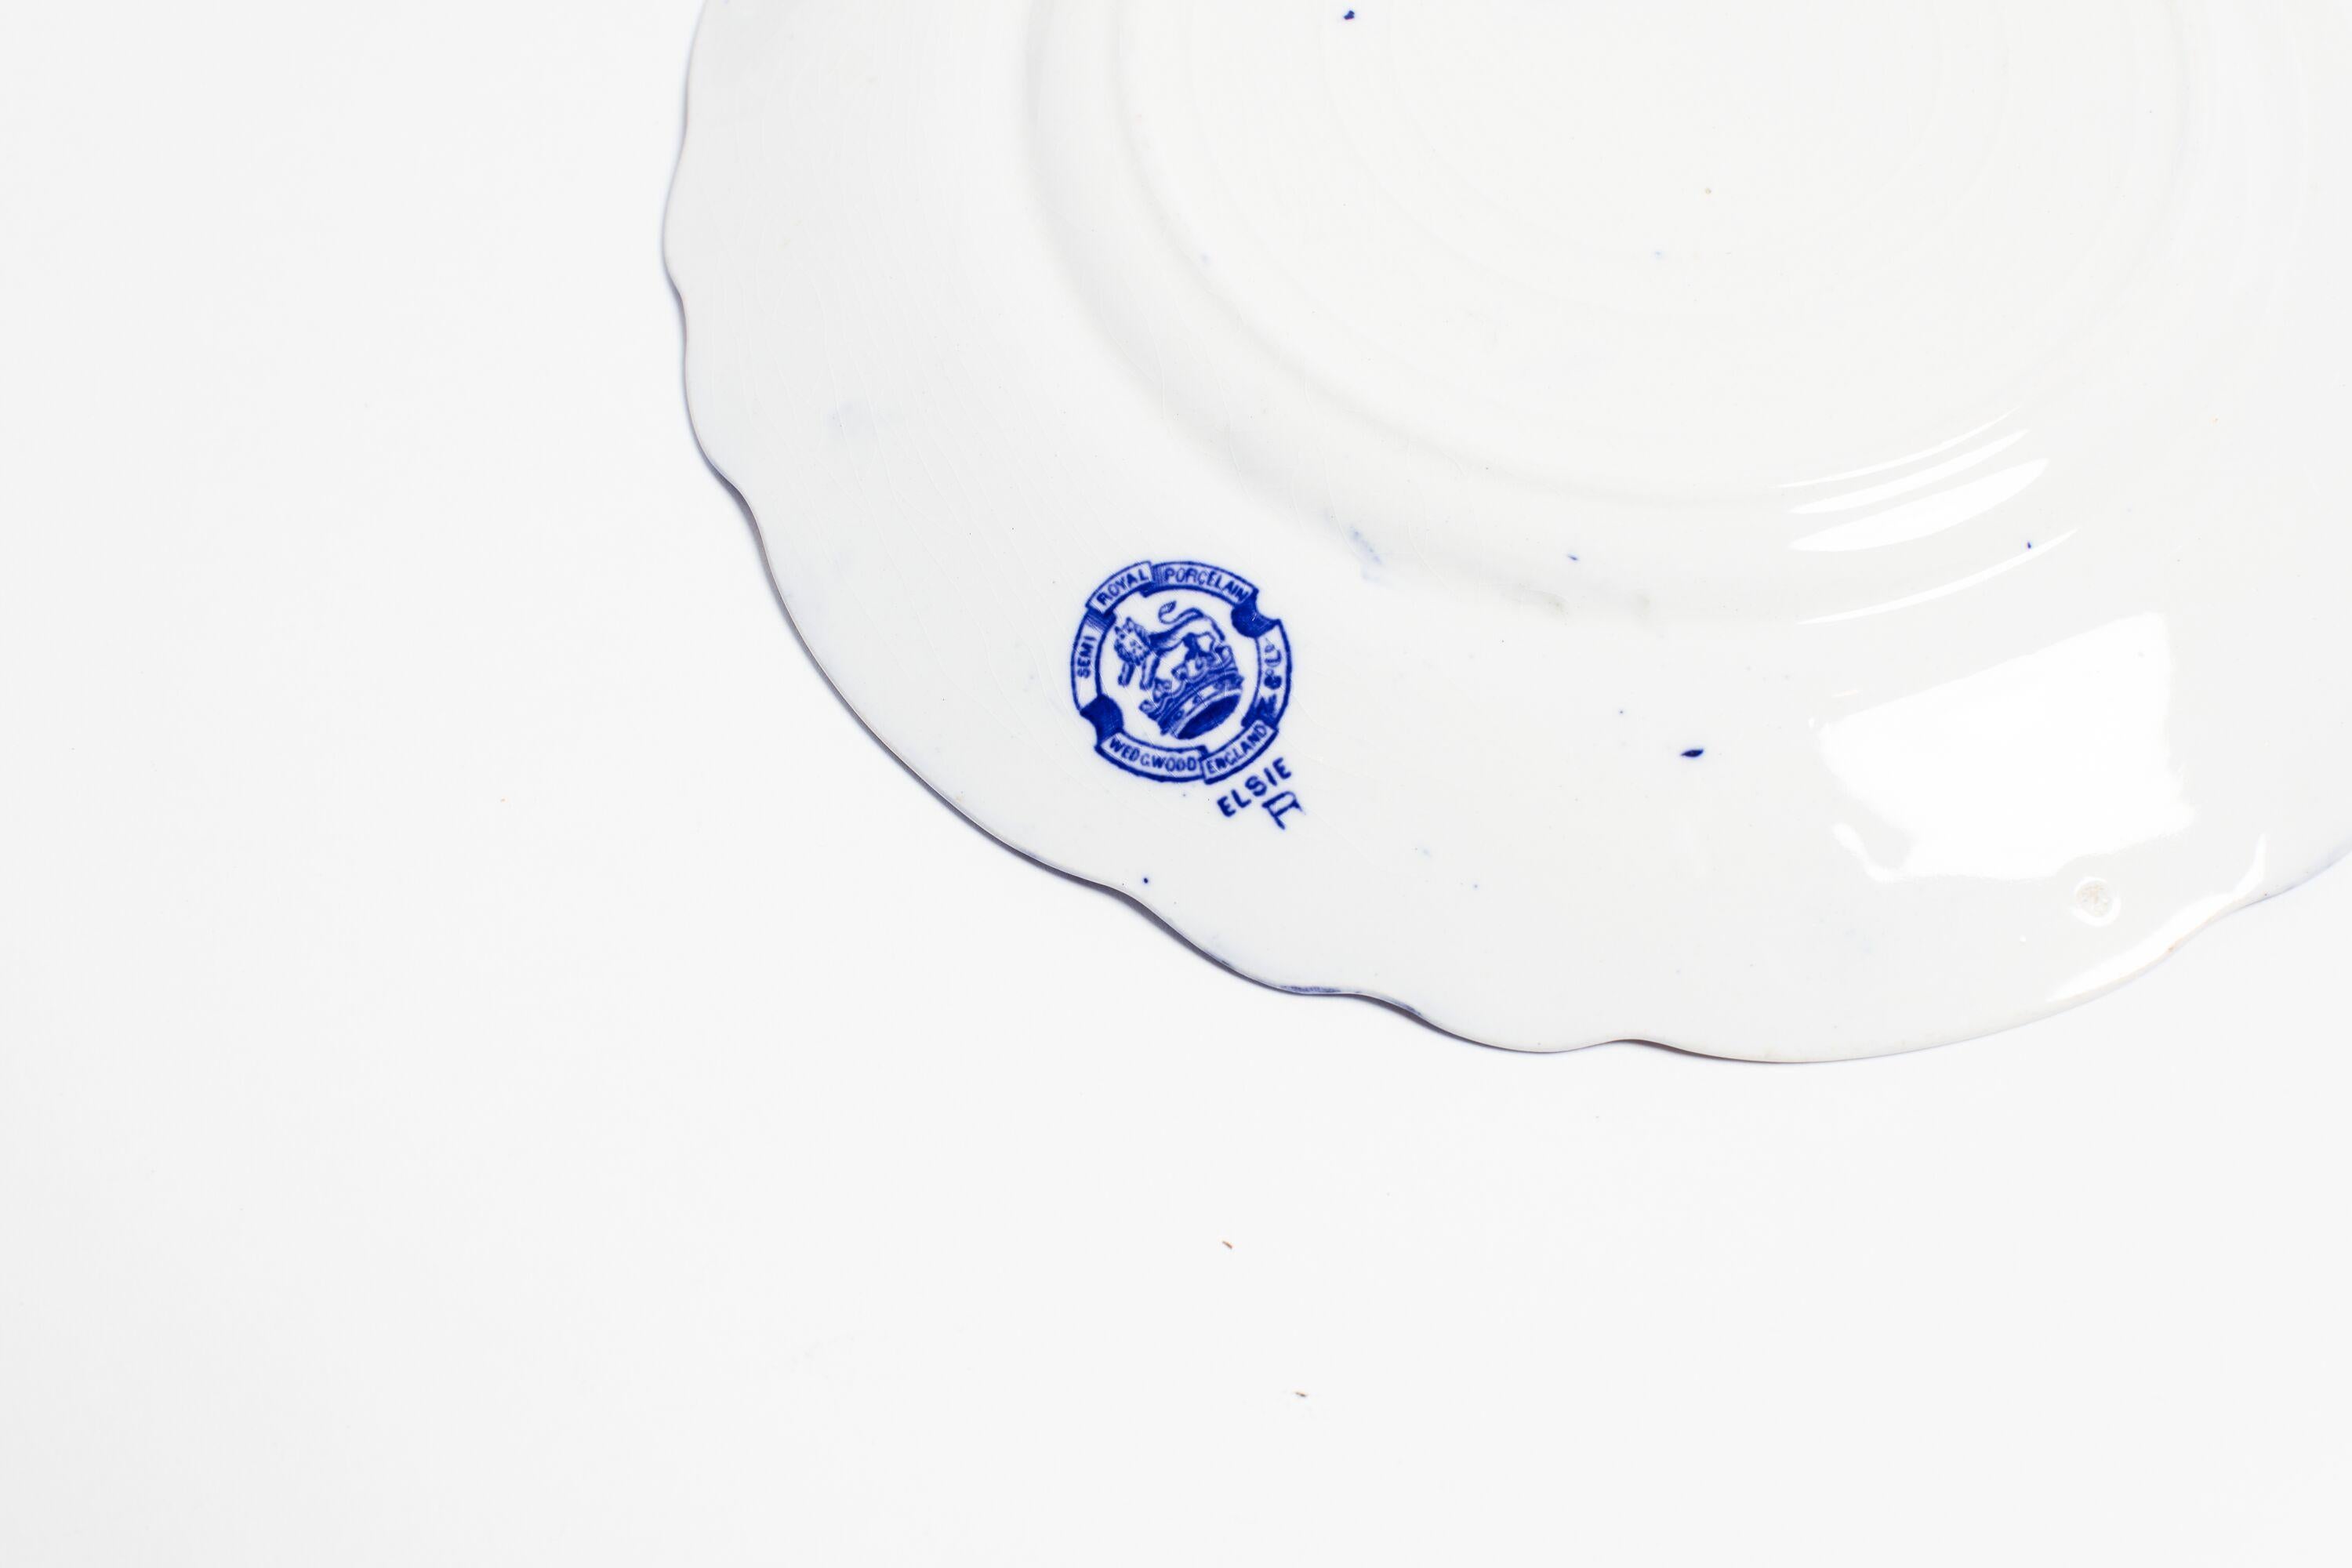 Antikes Wedgwood fließend blaues Essgeschirr. Benannt nach dem sanften Blau der Farbe, um 1860. Kleine Verluste und Chips an einigen Stücken.

Das Set enthält: 10 Essteller, 11 Salatteller, 6 Dessertteller, vier ovale Servierplatten, zwei gedeckte